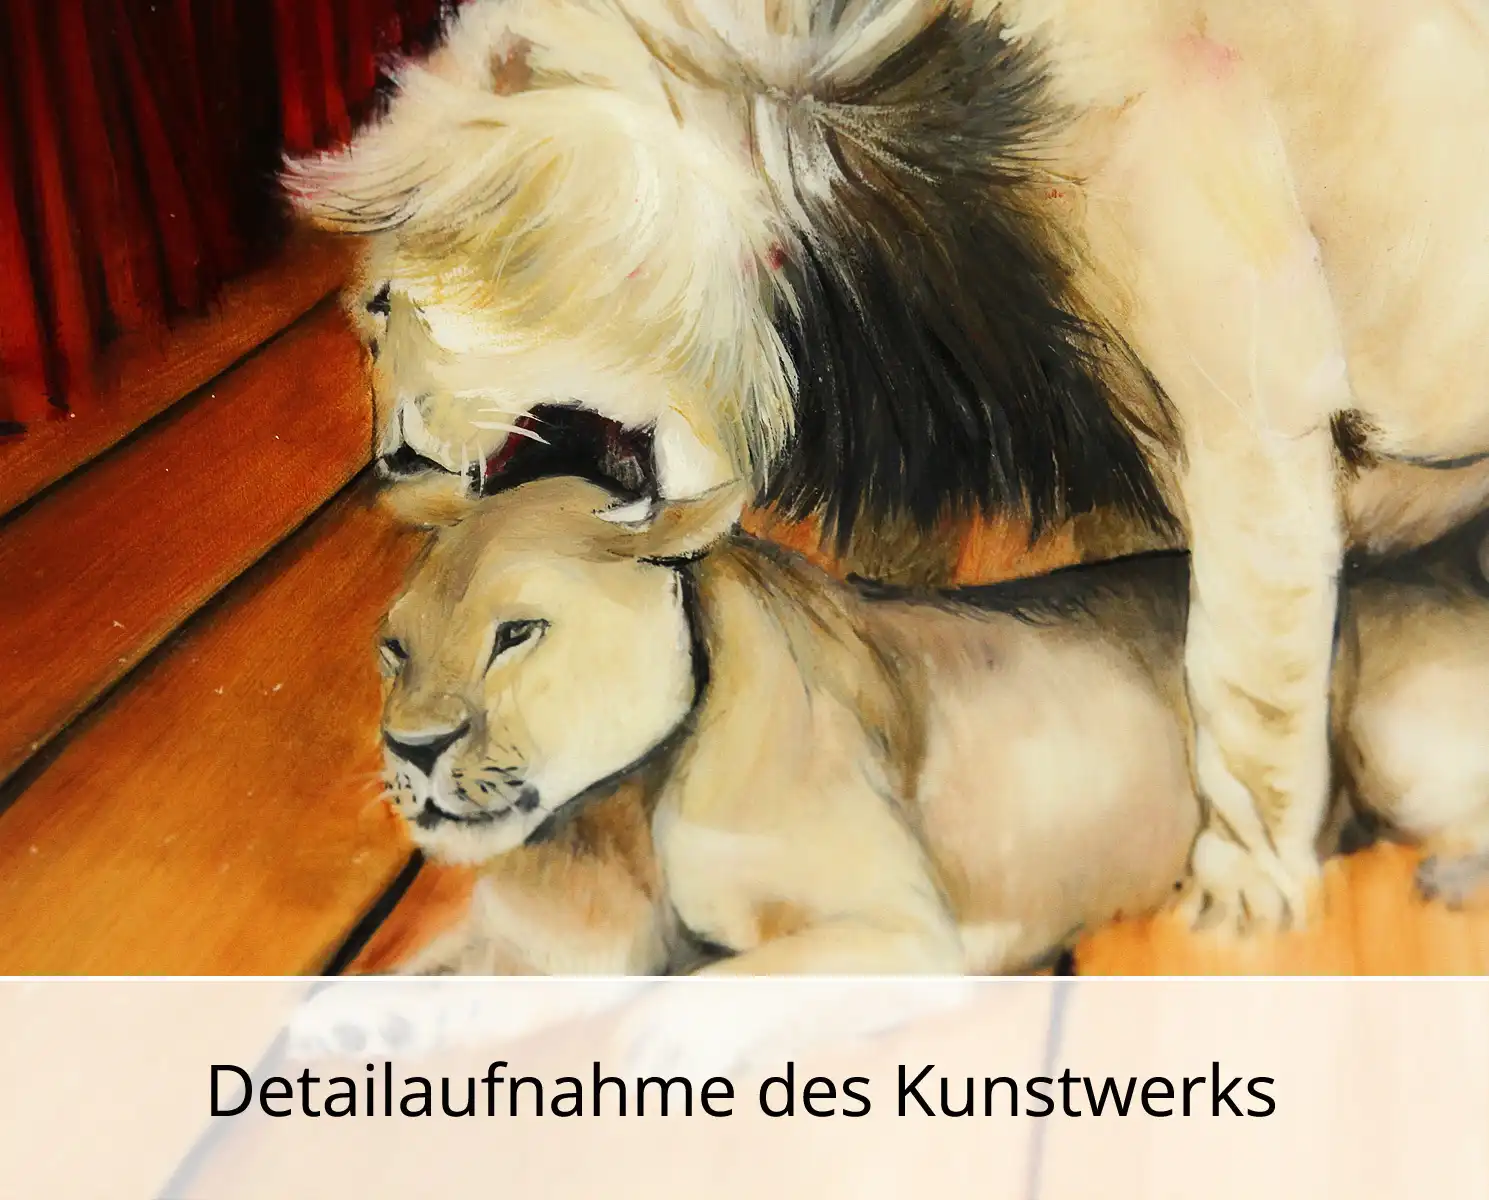 D. Block: "Du lieber Affe hättest du nur weggeschaut, nun willst du es wie der König treiben", Original/Unikat, expressive Ölmalerei